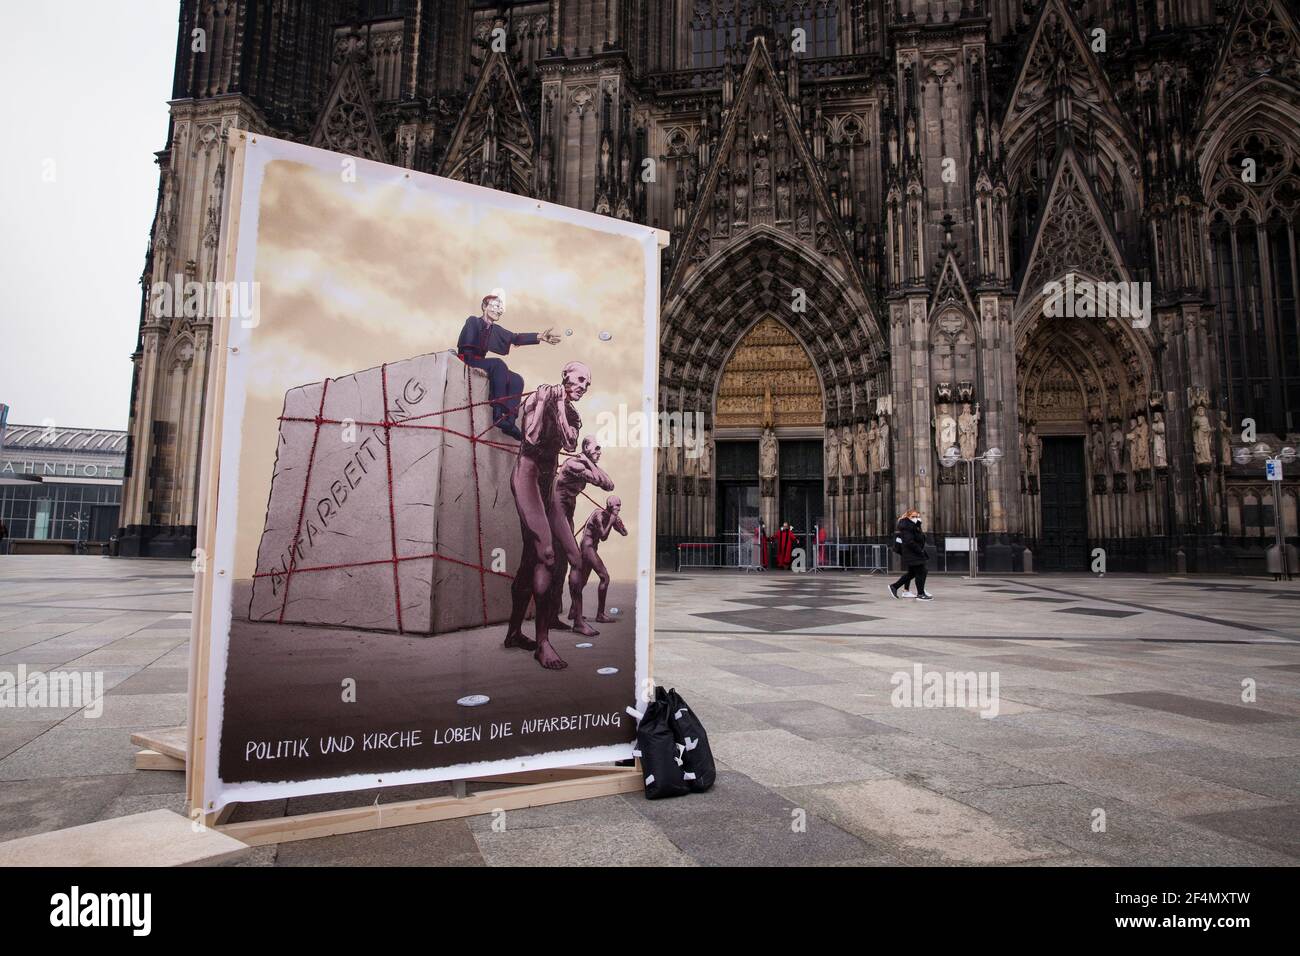 Vertreter der Opfer protestieren mit einem Plakat vor dem Dom, Köln, Germ gegen die zögerliche Offenlegung von Missbrauchsfällen durch Kirchenvertreter Stockfoto